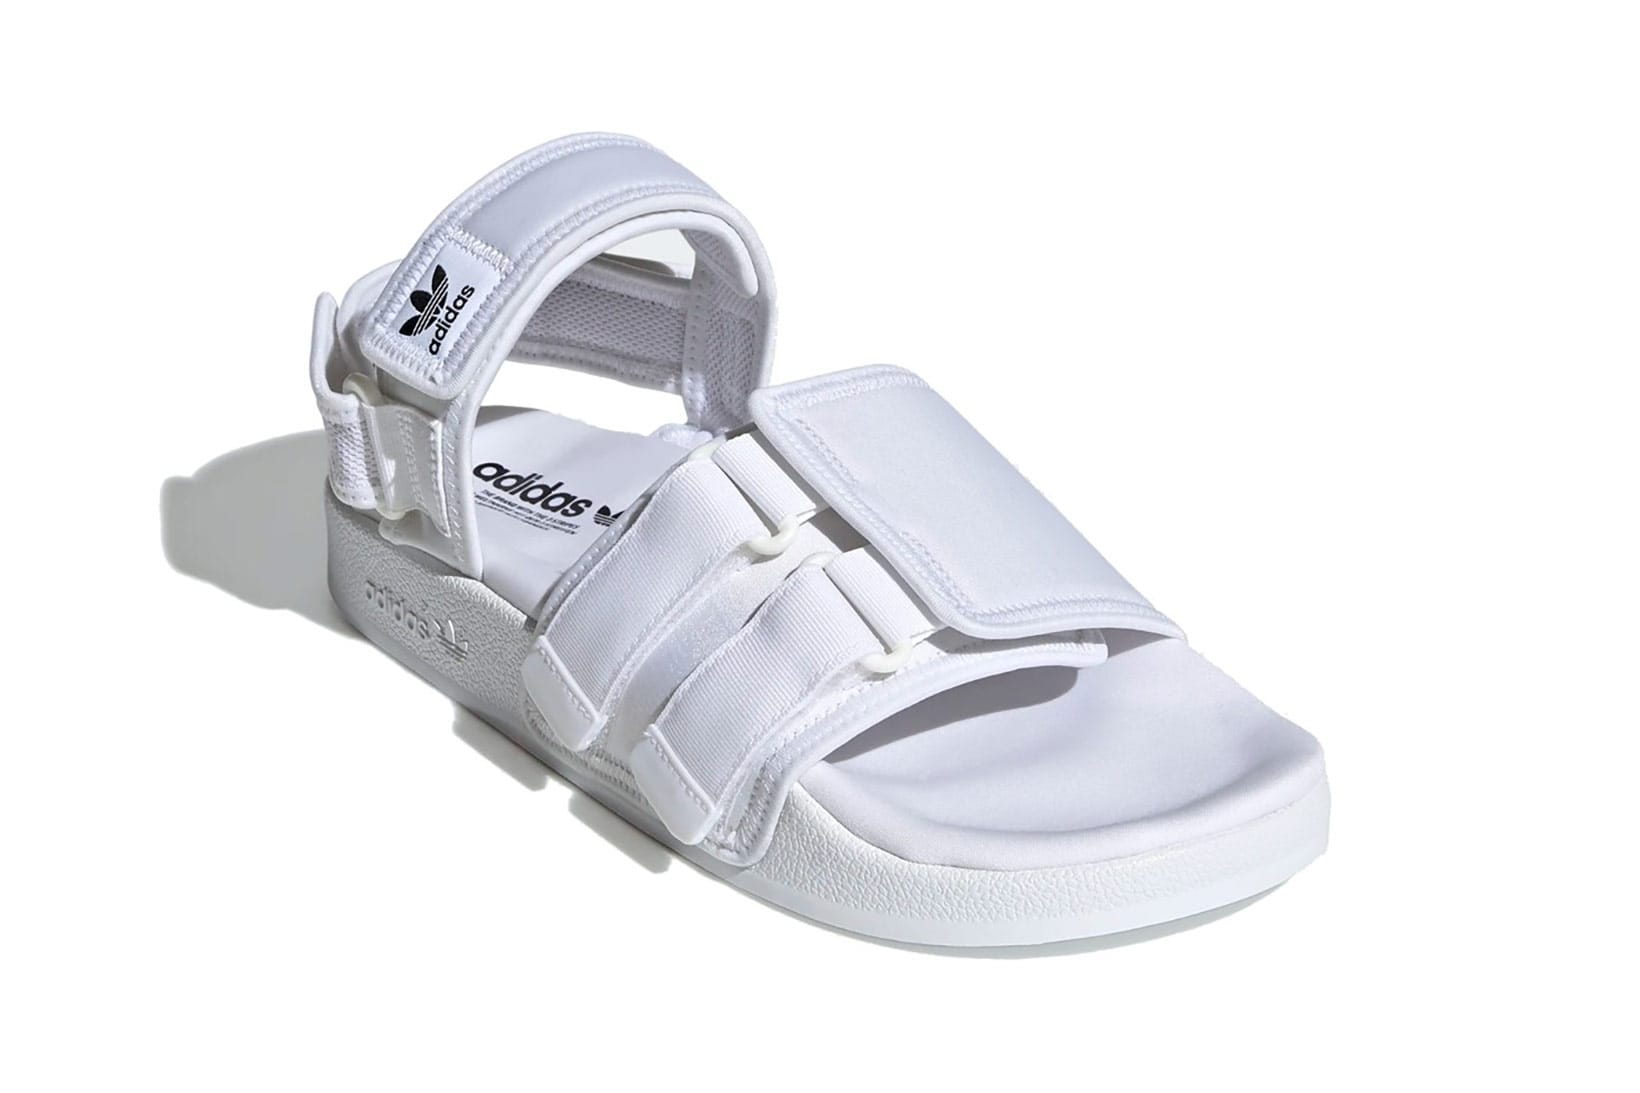 adidas classic sandals